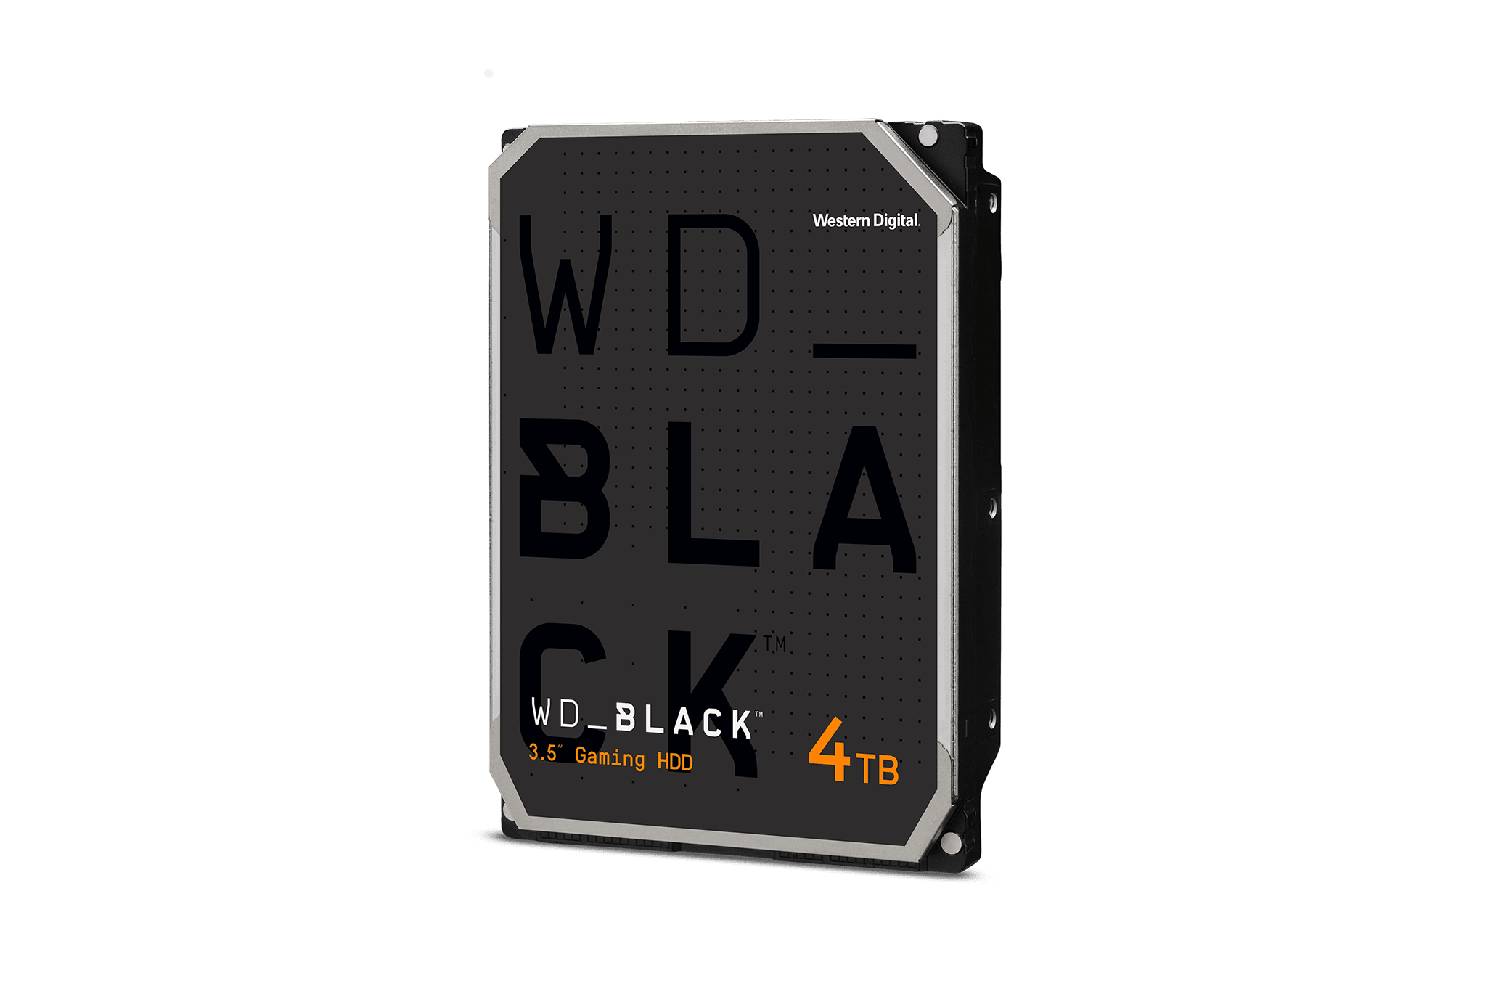 WD Black 4TB Performance Desktop HDD (WD4005FZBX)